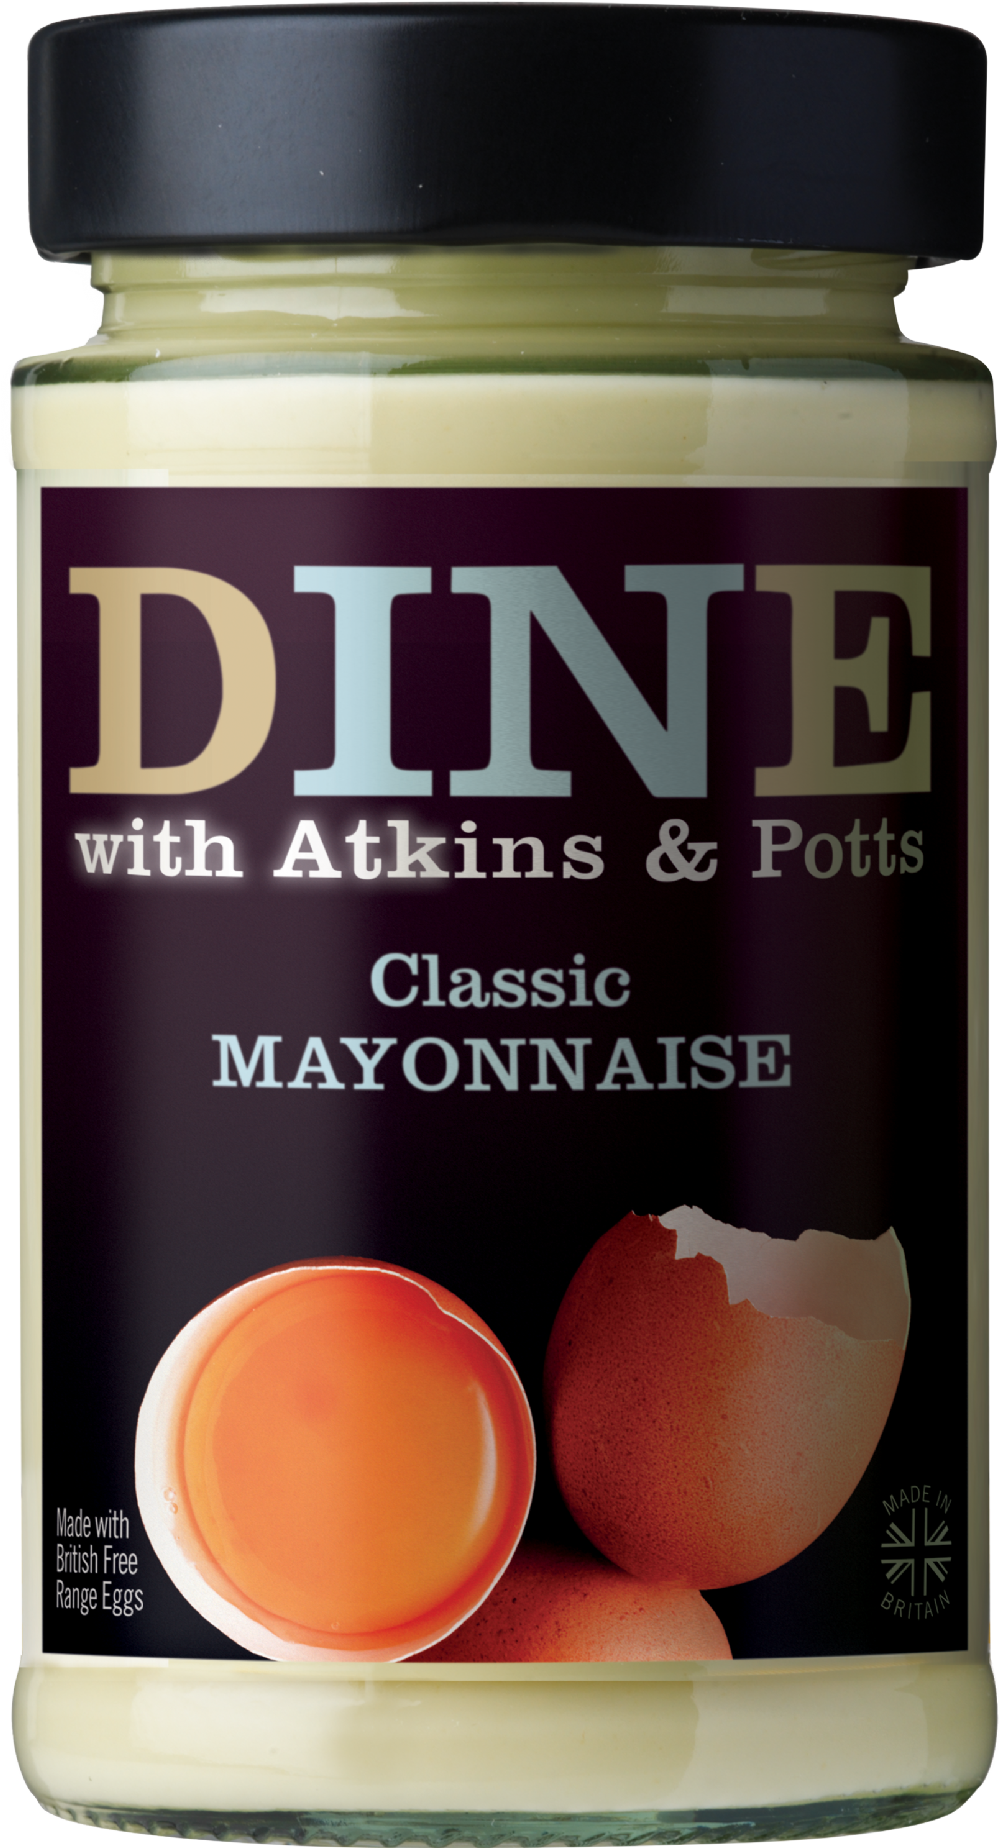 ATKINS & POTTS Classic Mayonnaise 200g